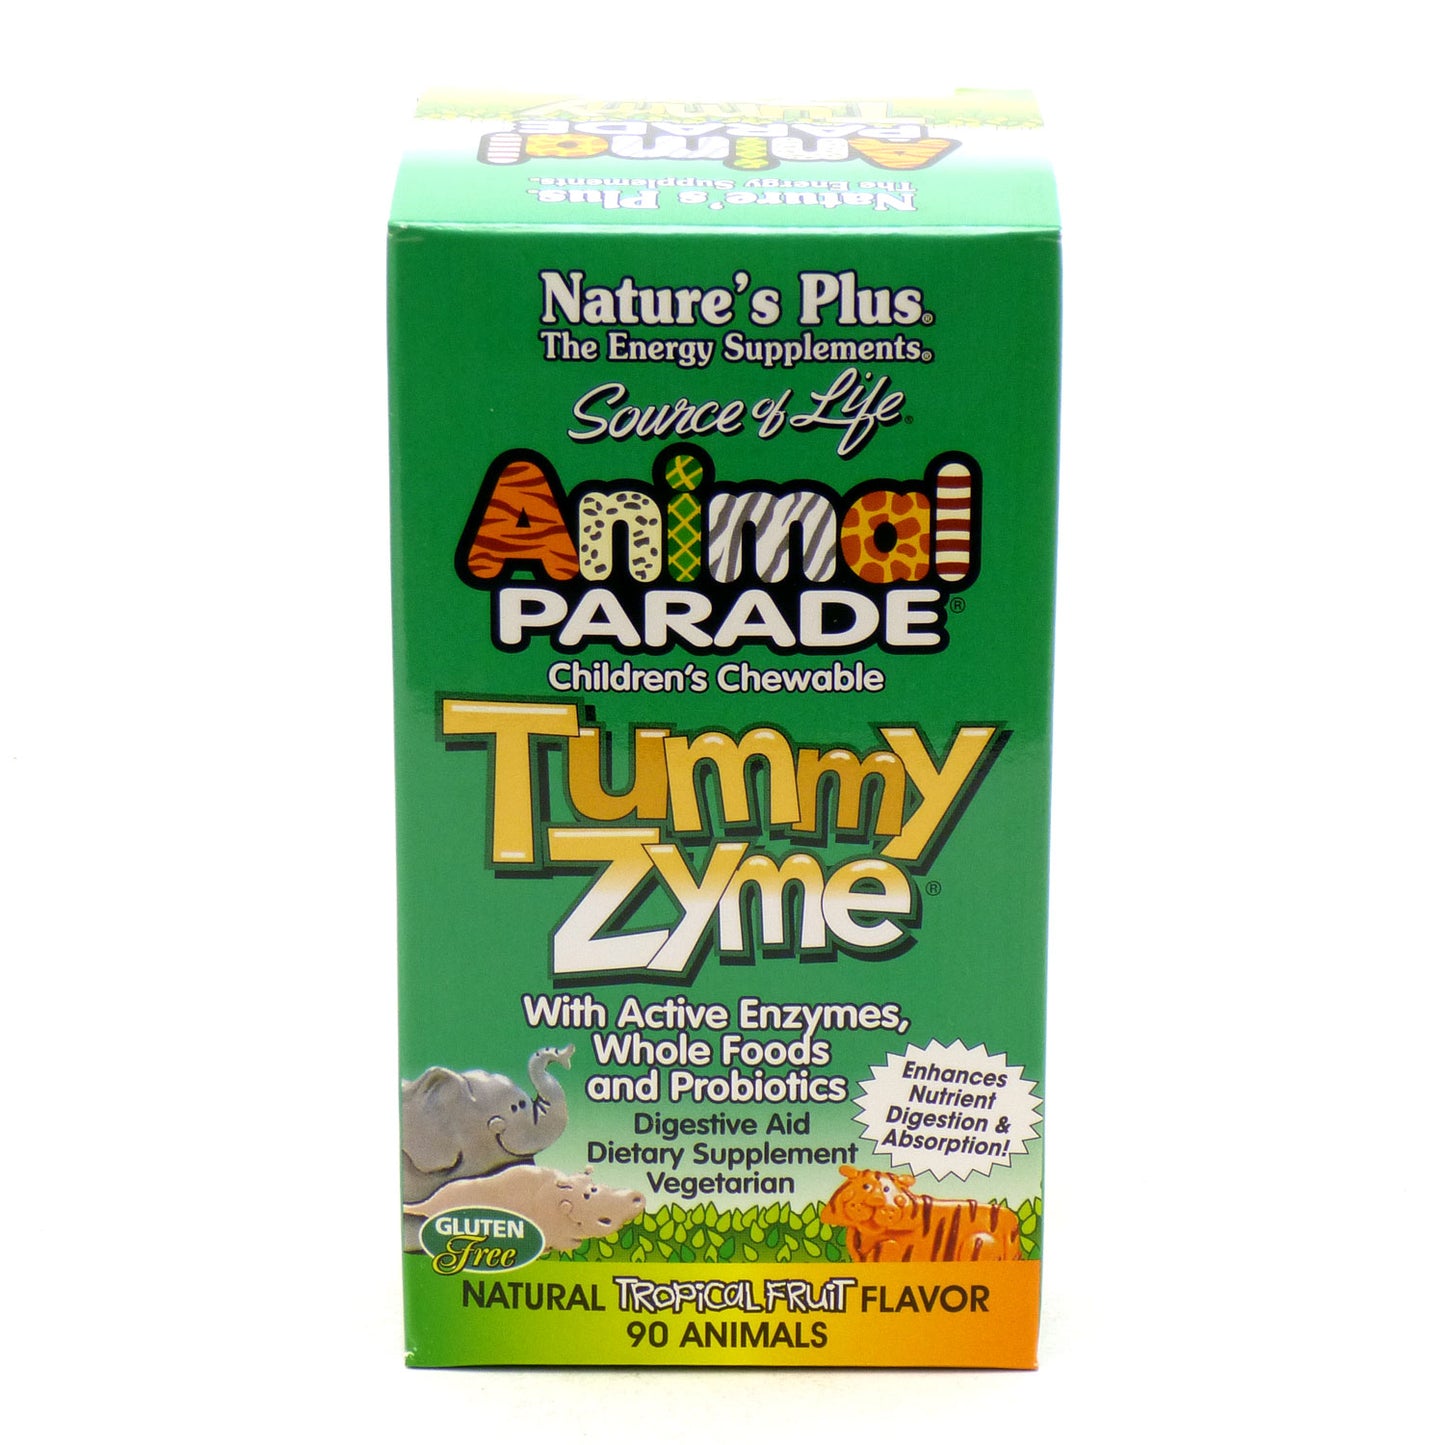 TummyZyme -  Animal Parade